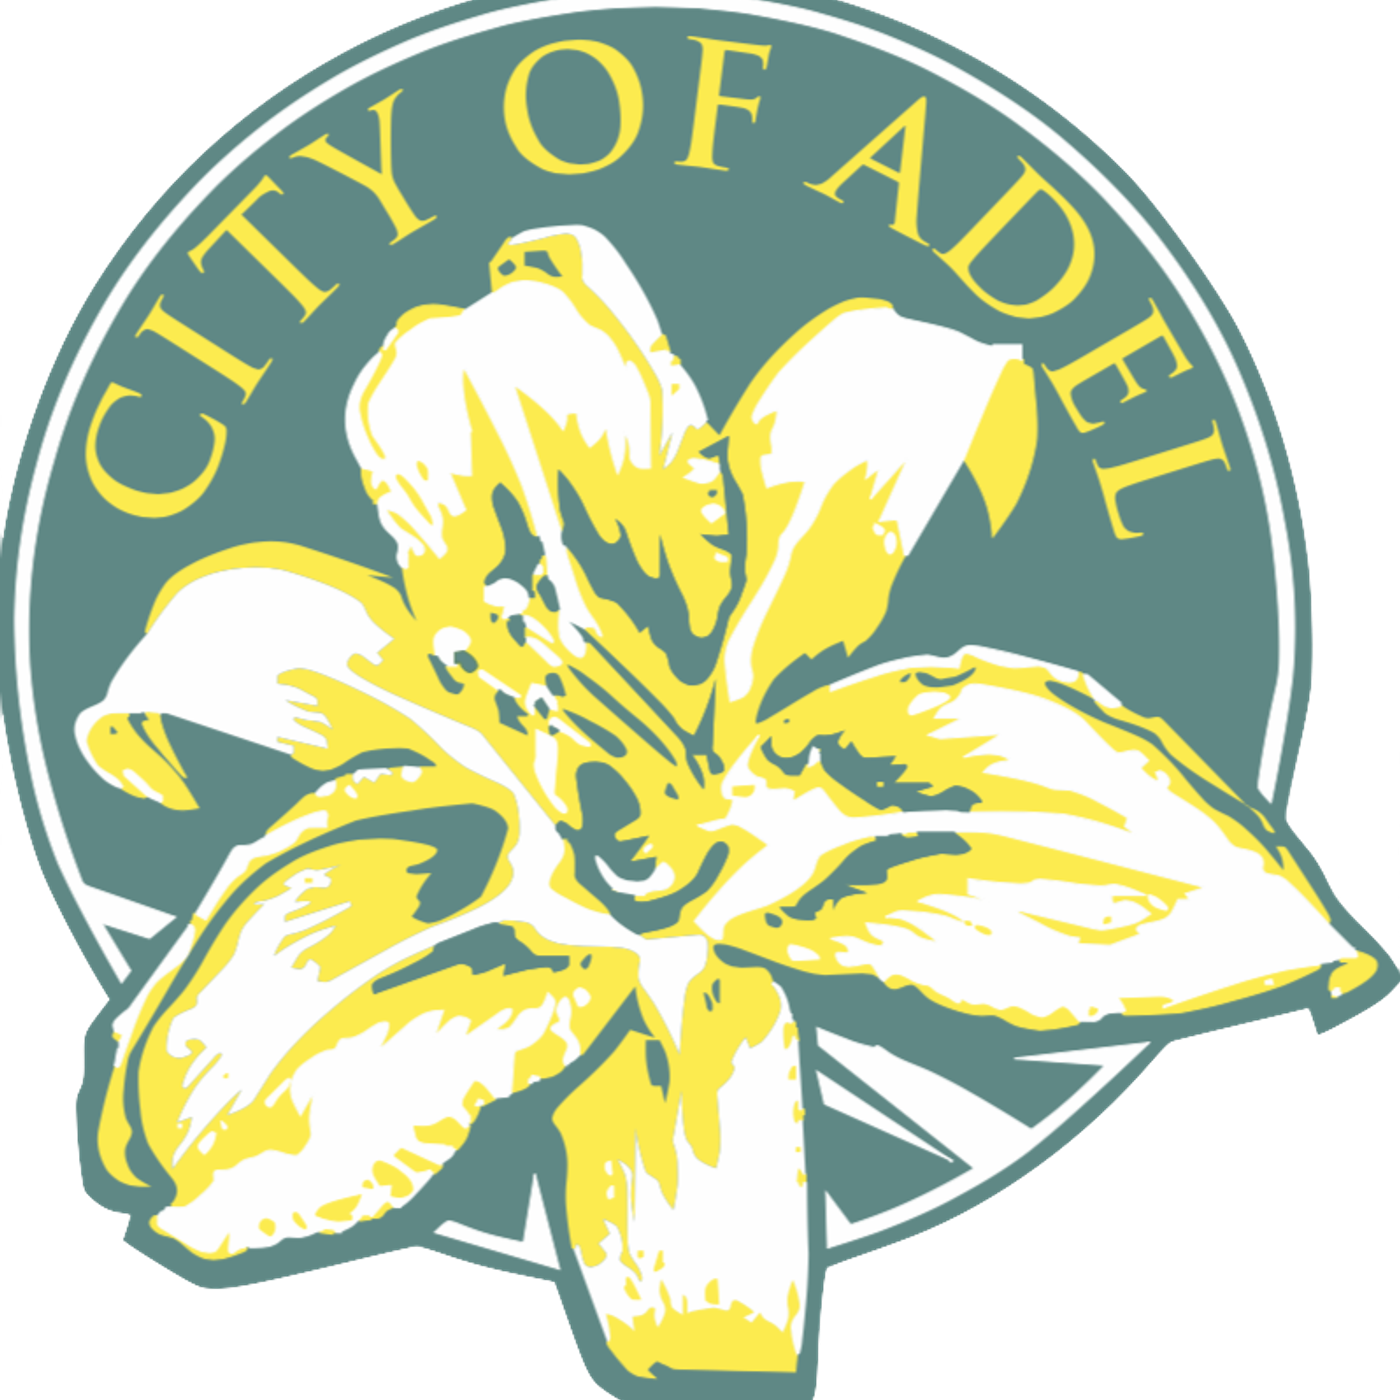 S4 Ep2: 2. Mayor Buddy Duke - City of of Adel, GA